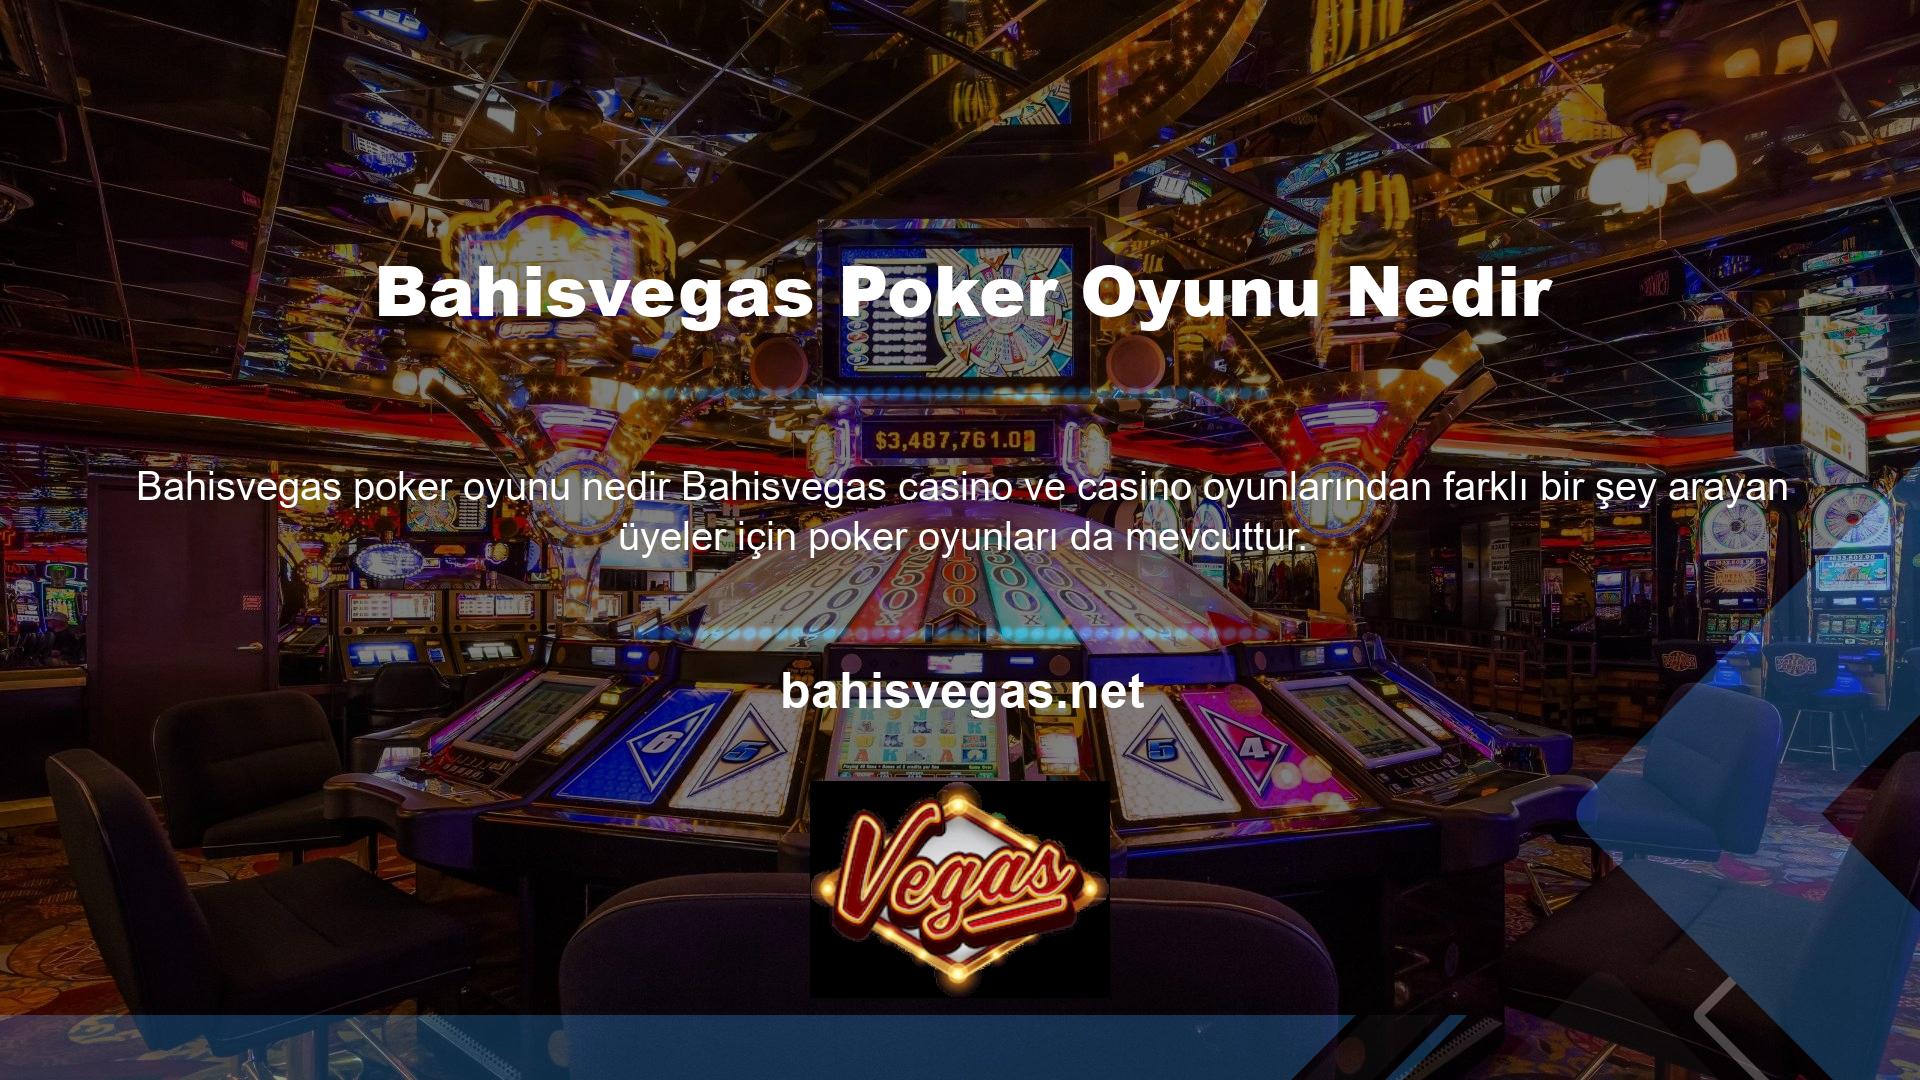 Bahisvegas, poker bölümünde 7 farklı seçenek sunarak bu ve diğer temalarda birçok varyasyon sunar